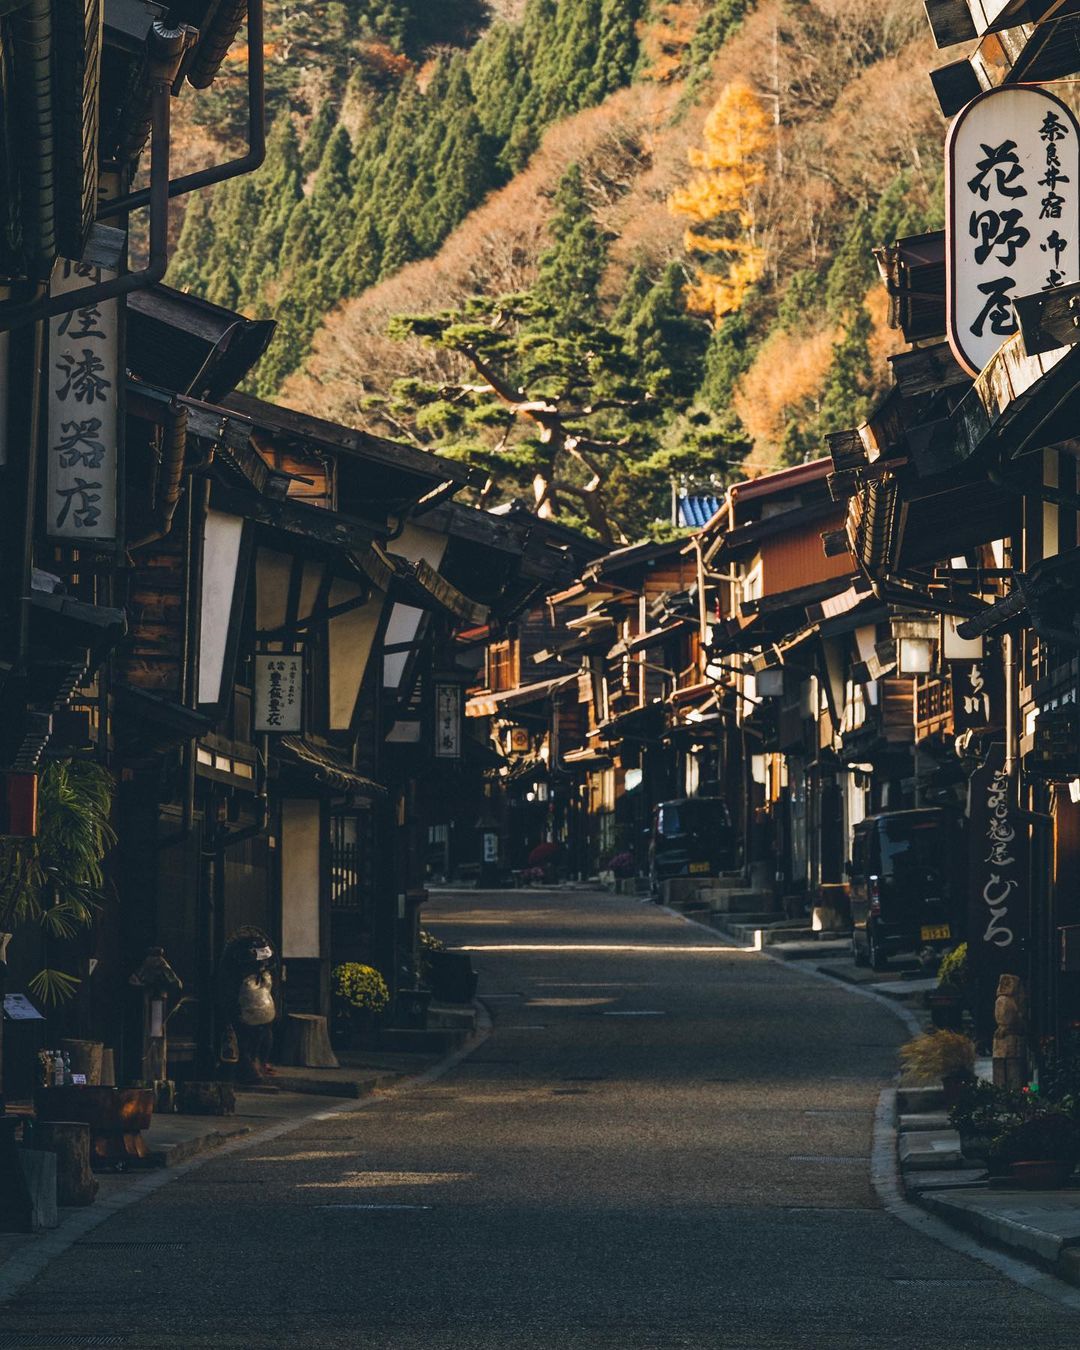 Пейзажи и улицы Японии на снимках Юма Ямашиты